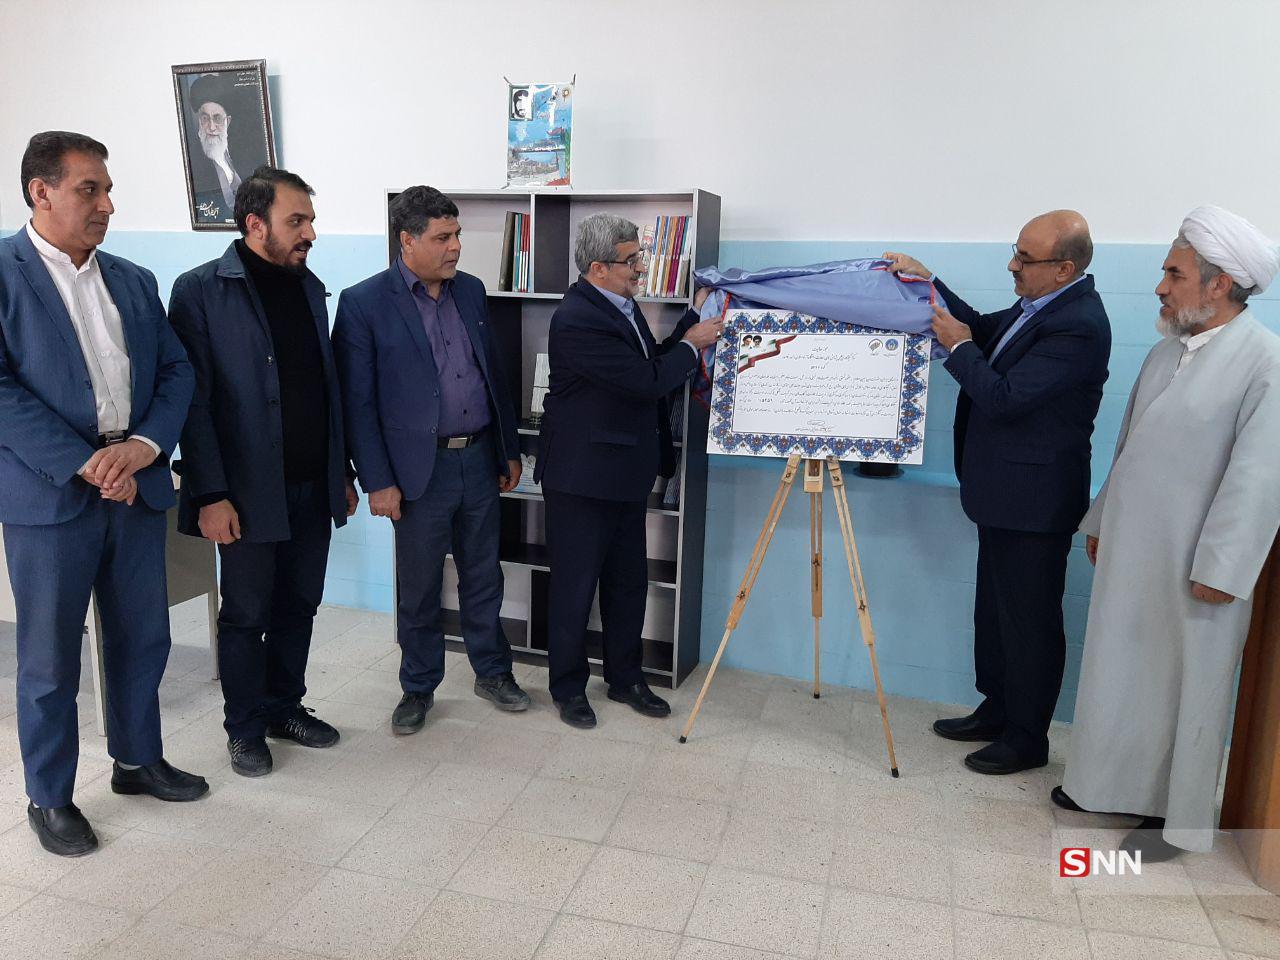  اولین پیوند کمیته امداد و دانشگاه آزاد اسلامی در واحد شاهرود افتتاح شد